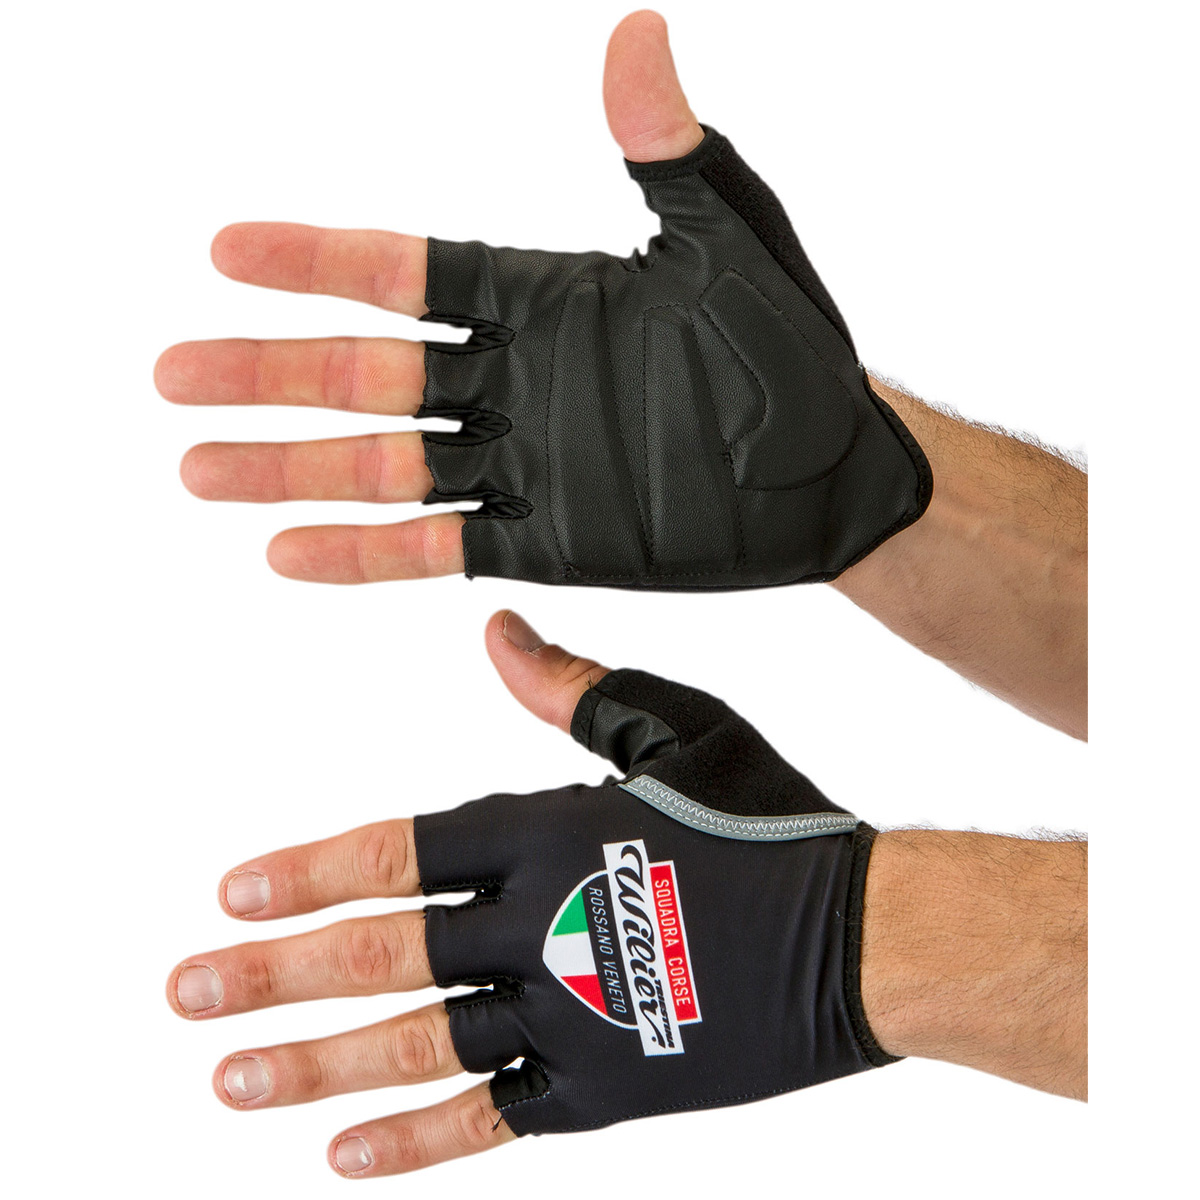 wilier gloves